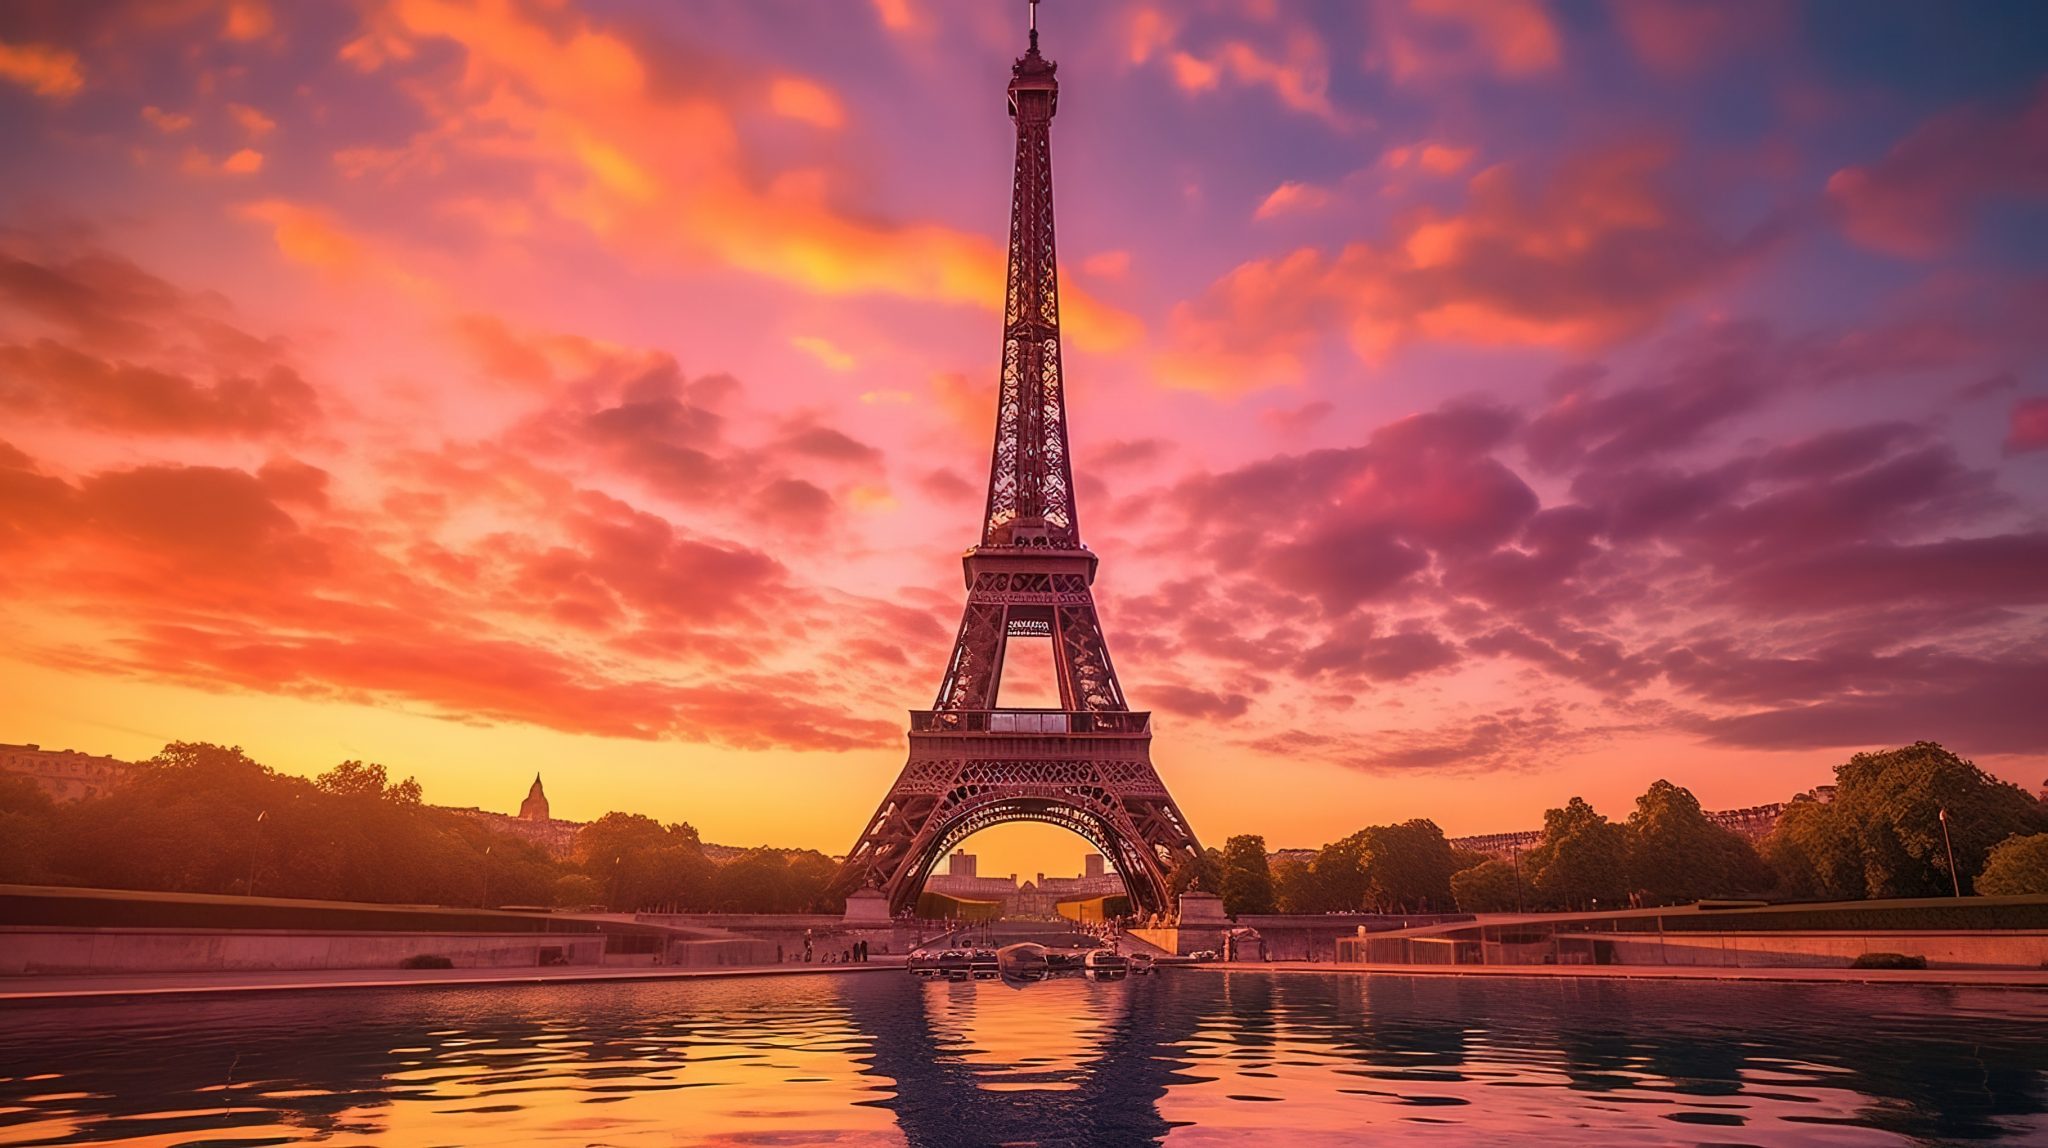 les 10 monuments et lieux touristiques préférés des français